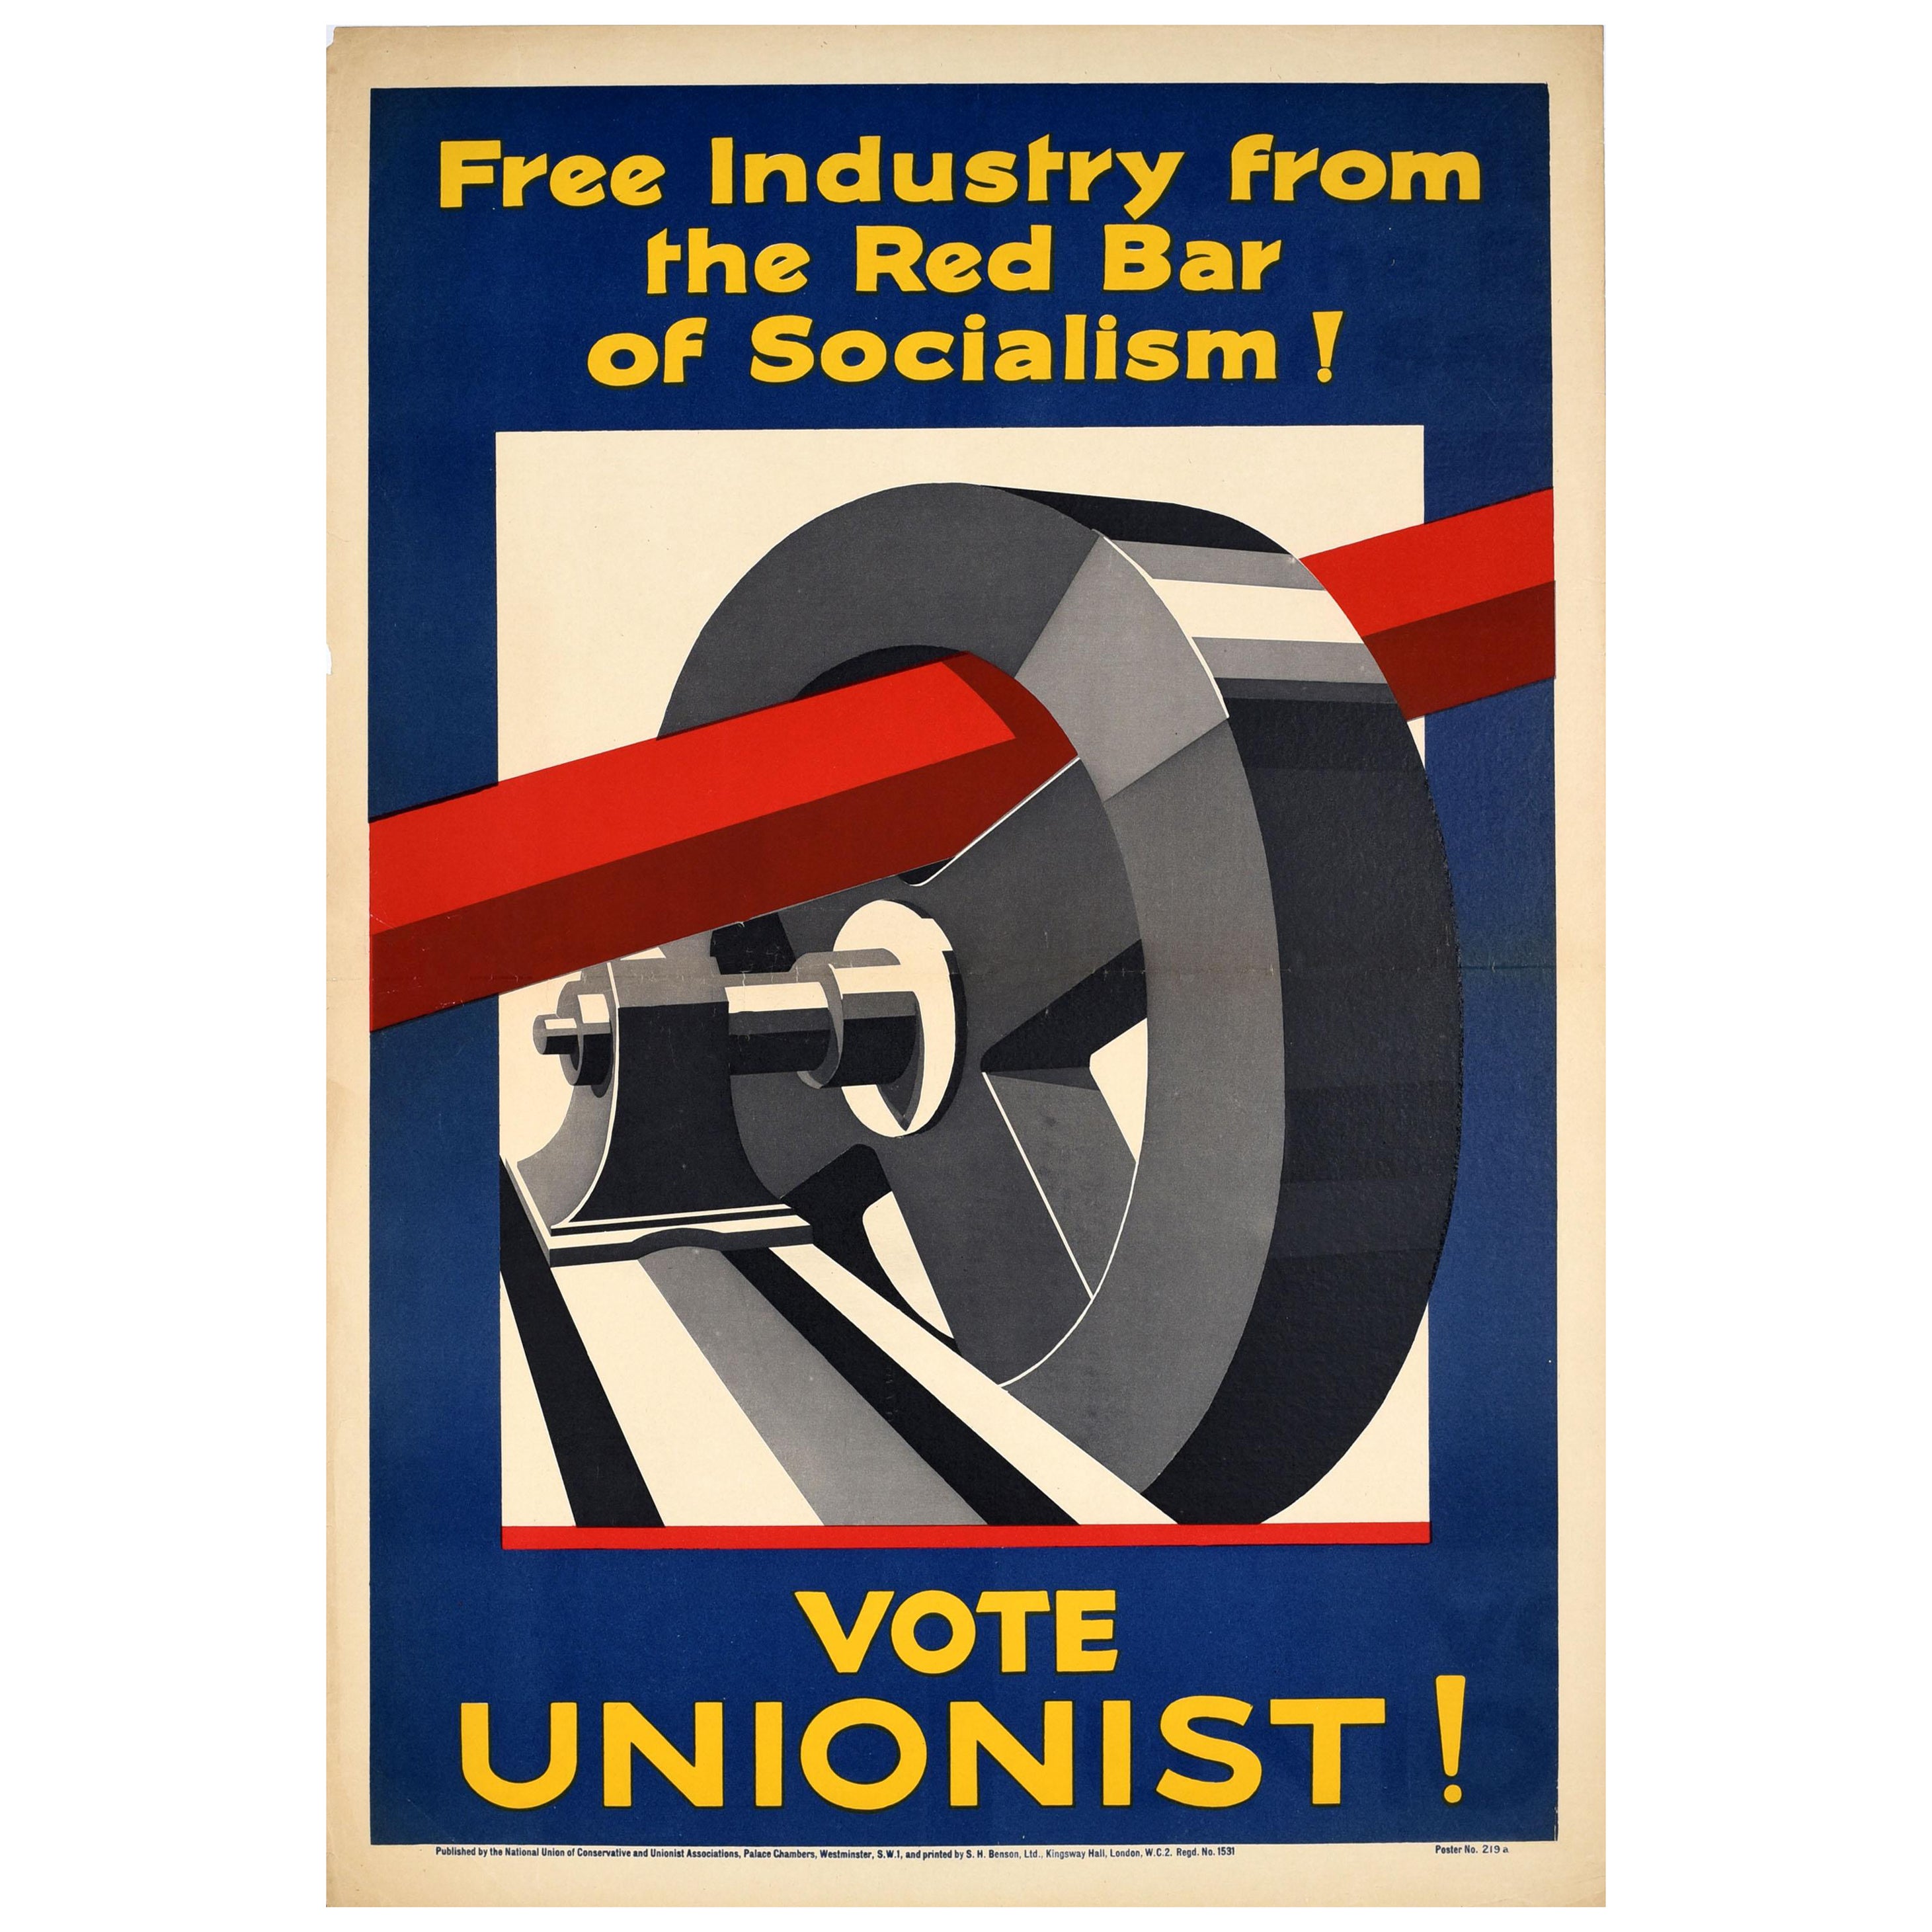 Original Antique Political Election Poster Vote Unionist Socialism Conservative